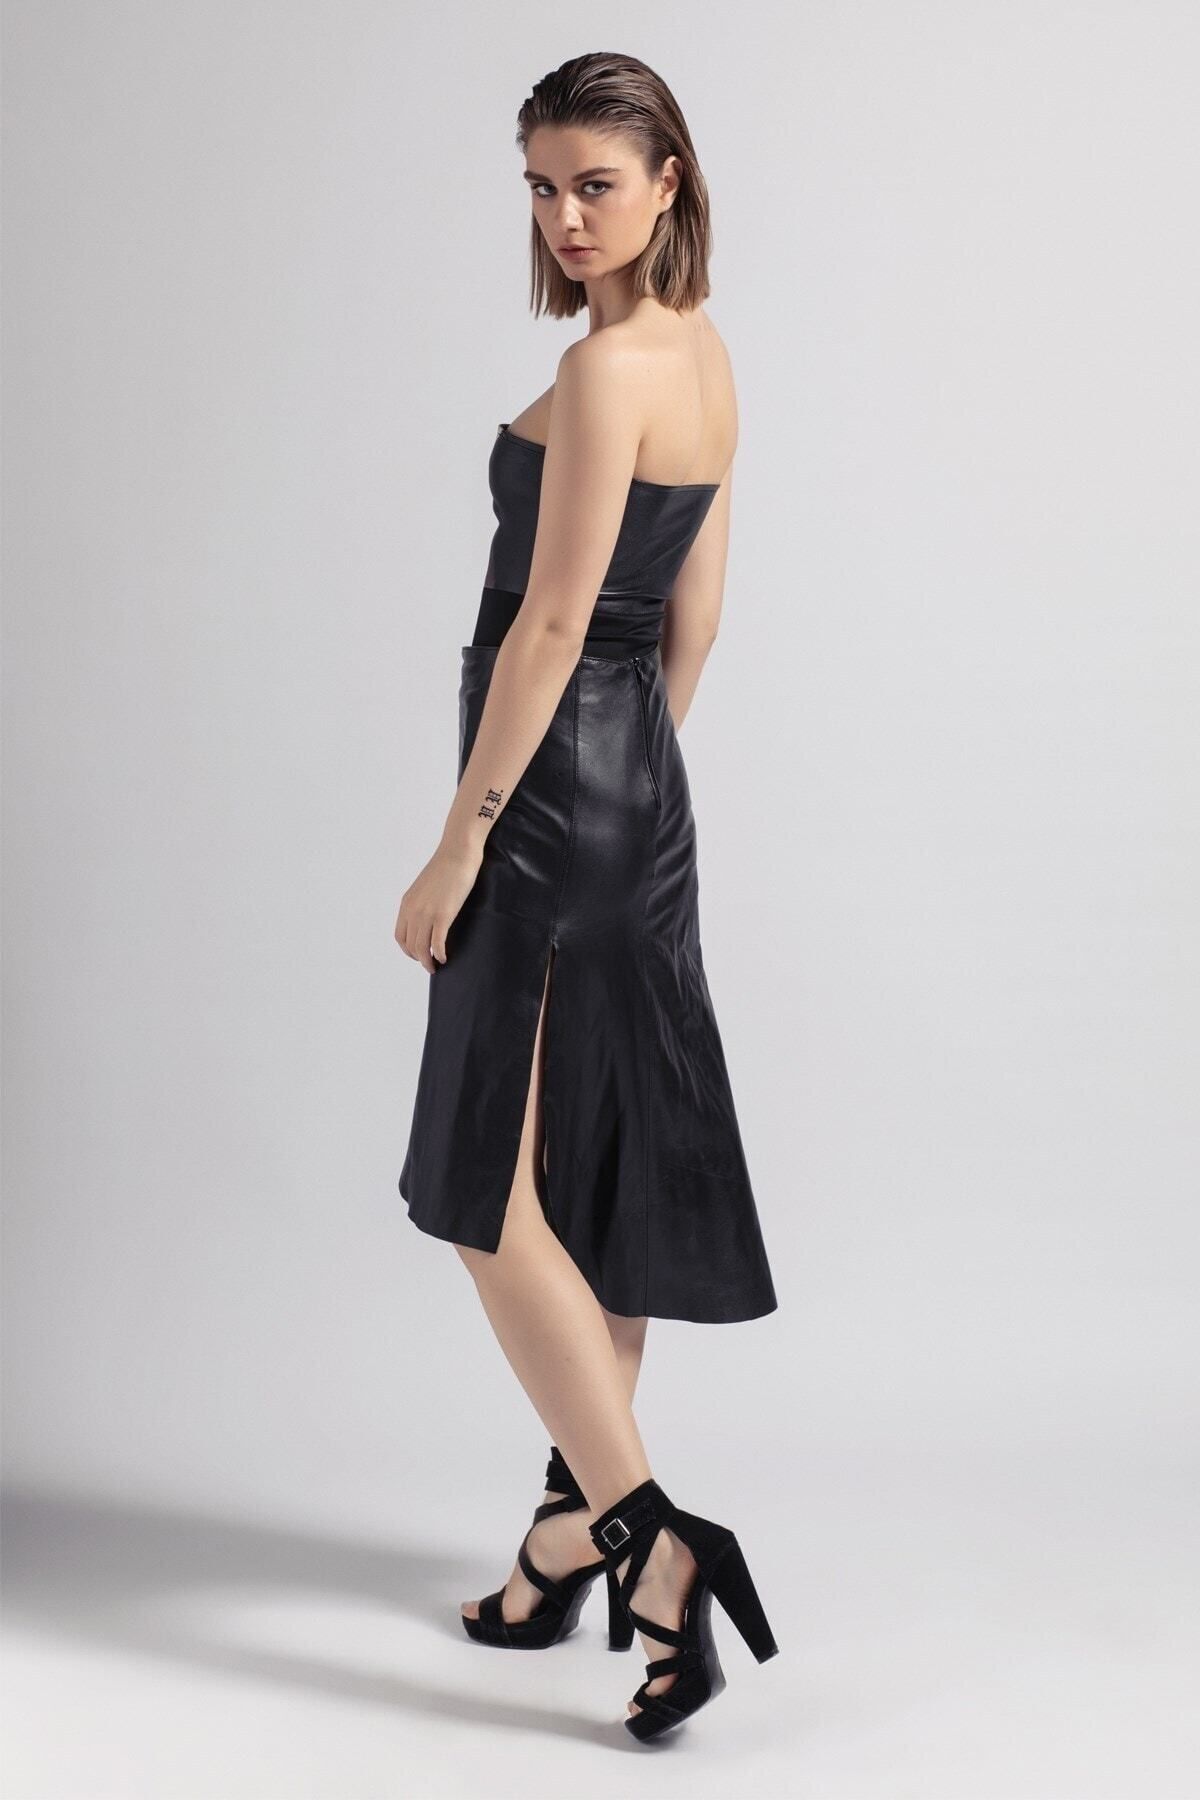 Deriderim Черная женская юбка из натуральной кожи с разрезом спереди, асимметричная расклешенная длинная юбка на молнии сзади TX9C1DEF6E1388